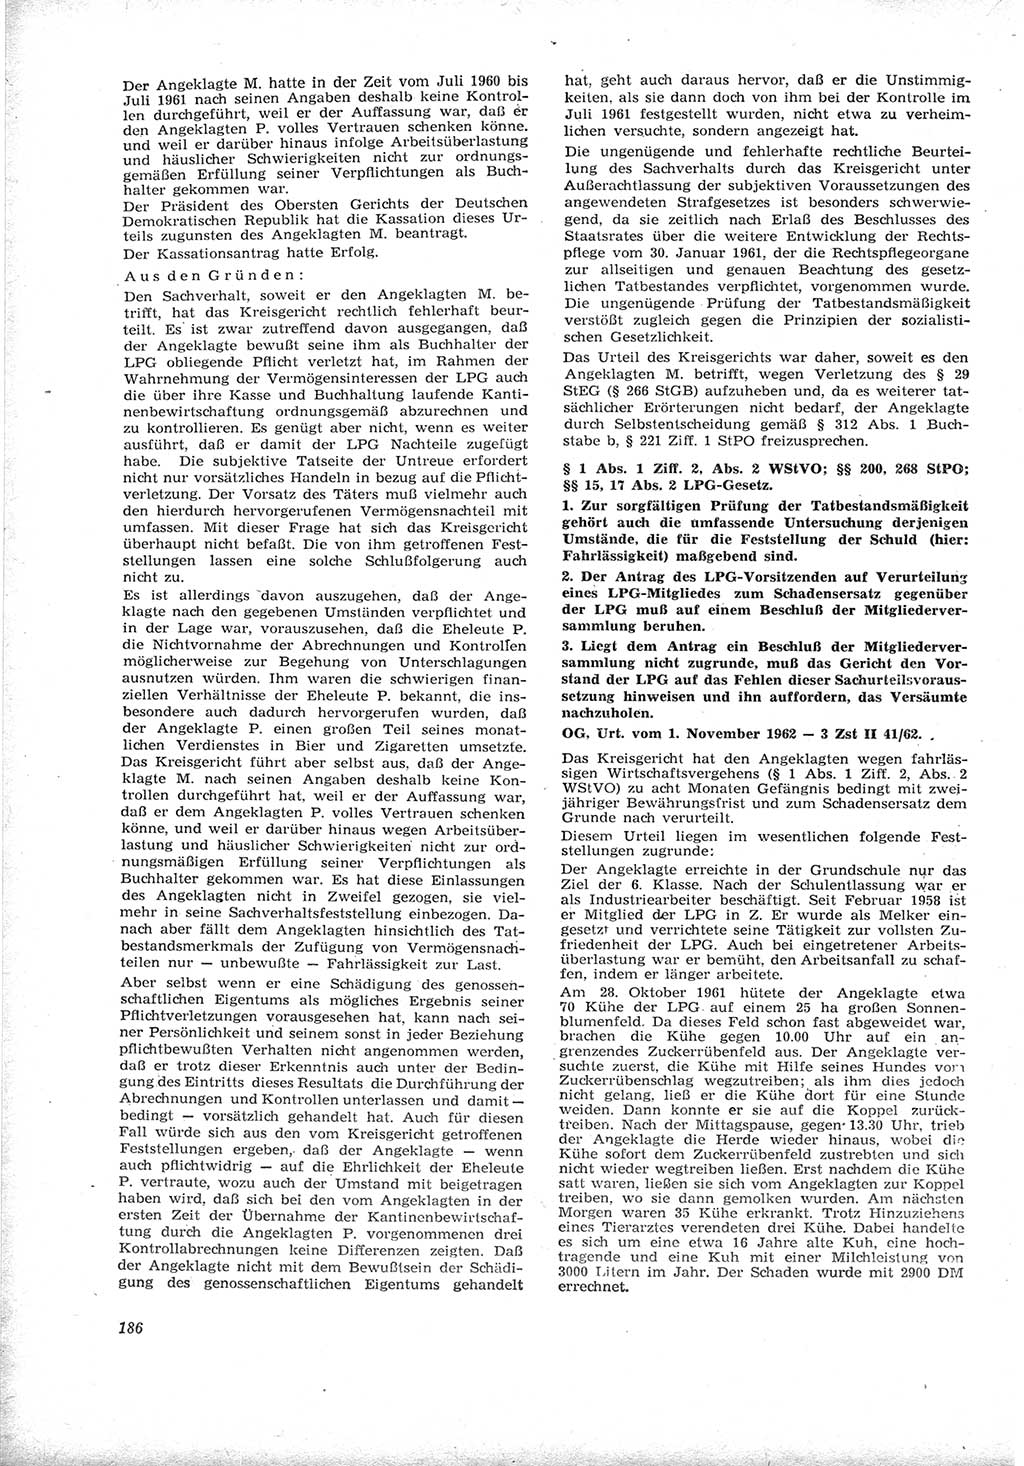 Neue Justiz (NJ), Zeitschrift für Recht und Rechtswissenschaft [Deutsche Demokratische Republik (DDR)], 17. Jahrgang 1963, Seite 186 (NJ DDR 1963, S. 186)